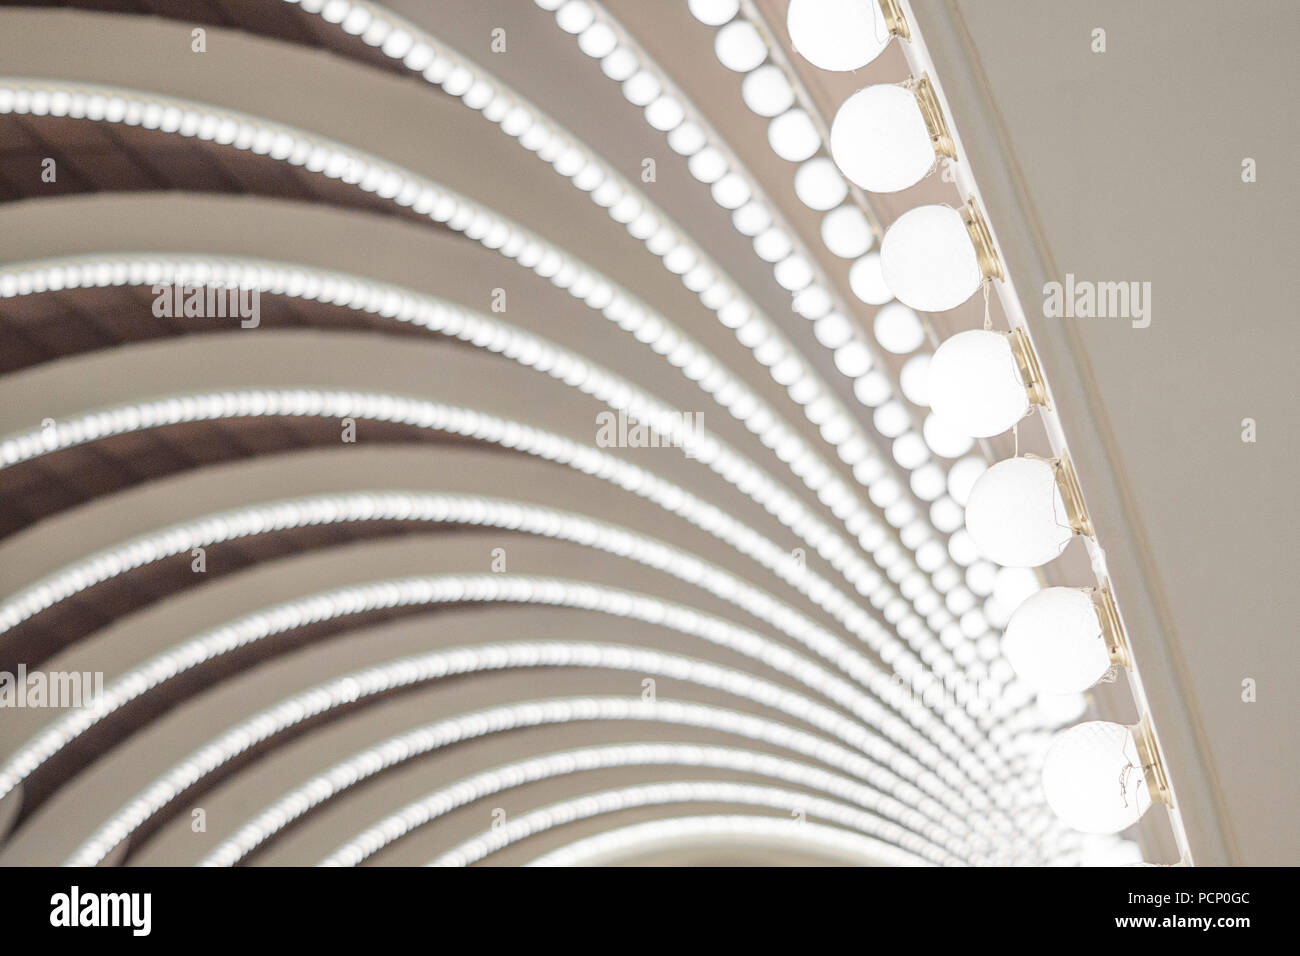 Une installation d'éclairage sur un plafond en dôme Banque D'Images